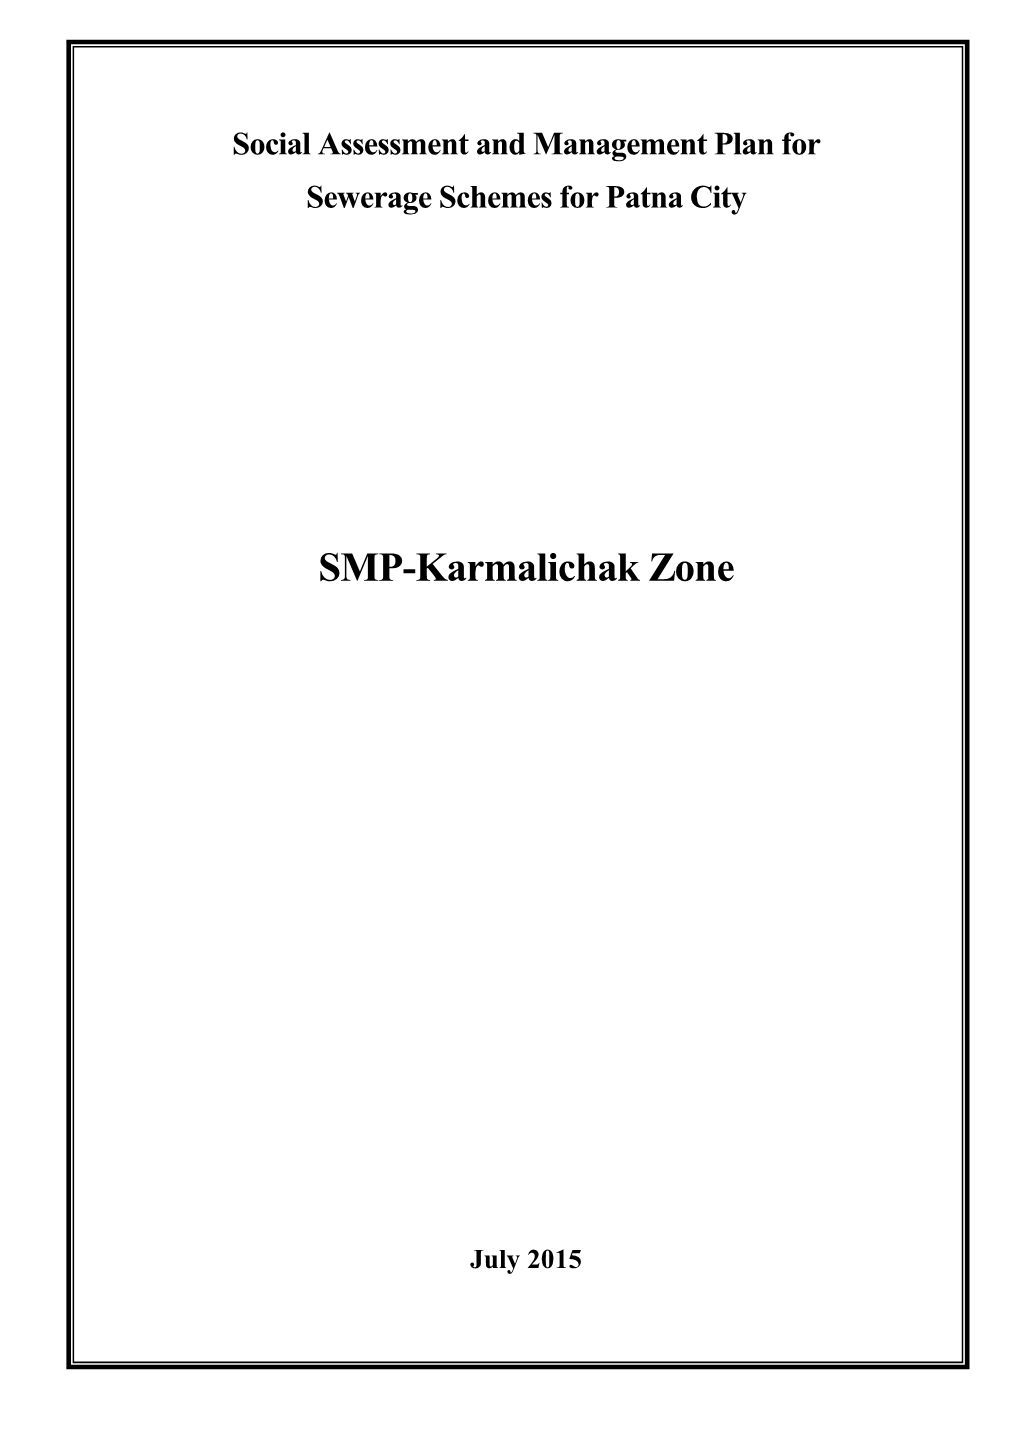 SMP-Karmalichak Zone